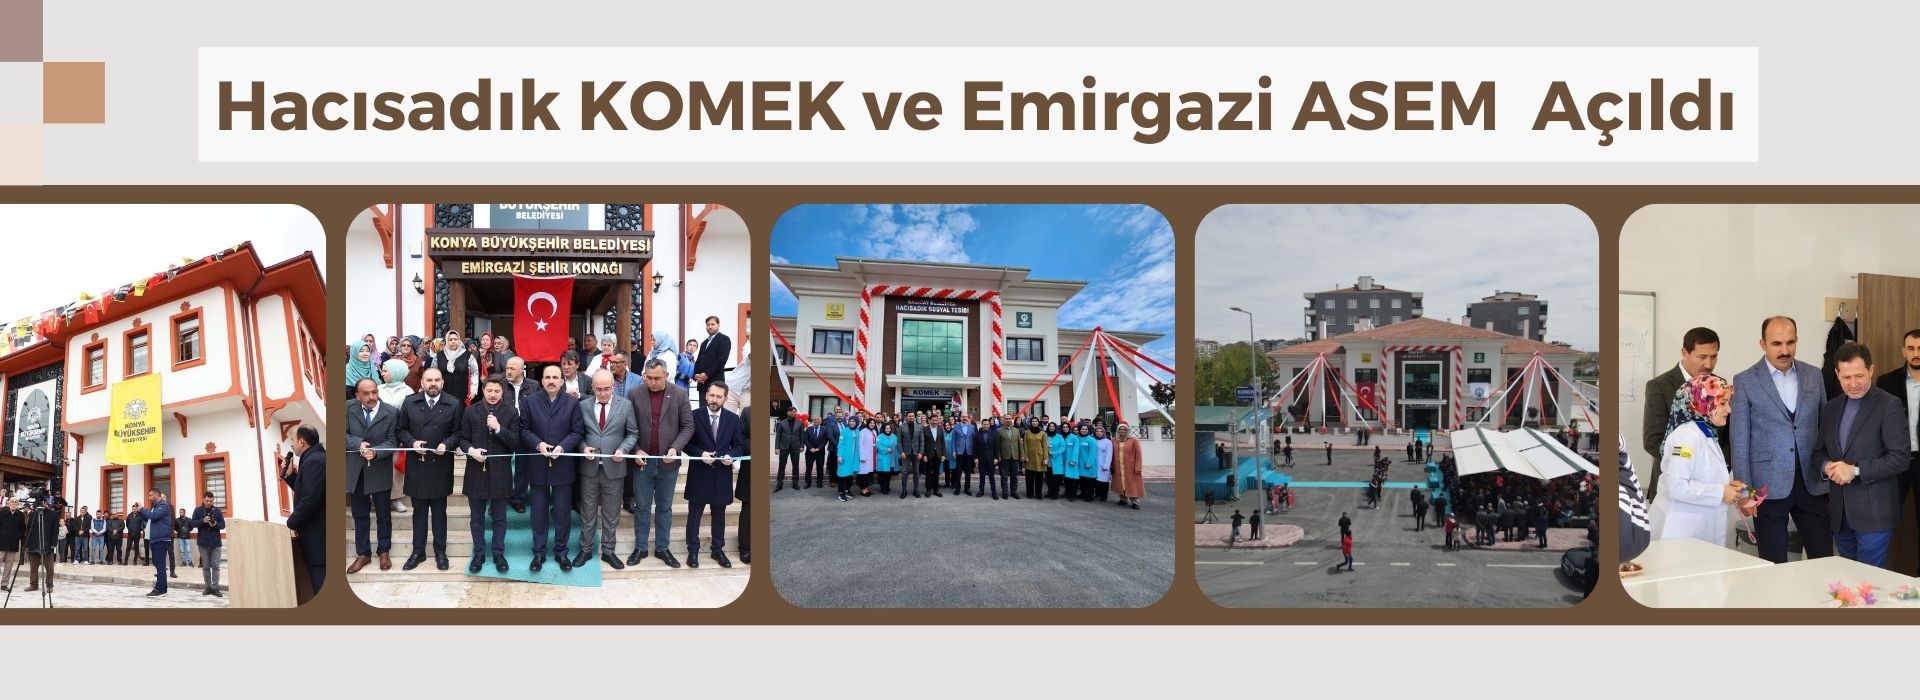 Hacı Sadık KOMEK Kurs Merkezi ve Emirgazi ASEM Dualarla Açıldı